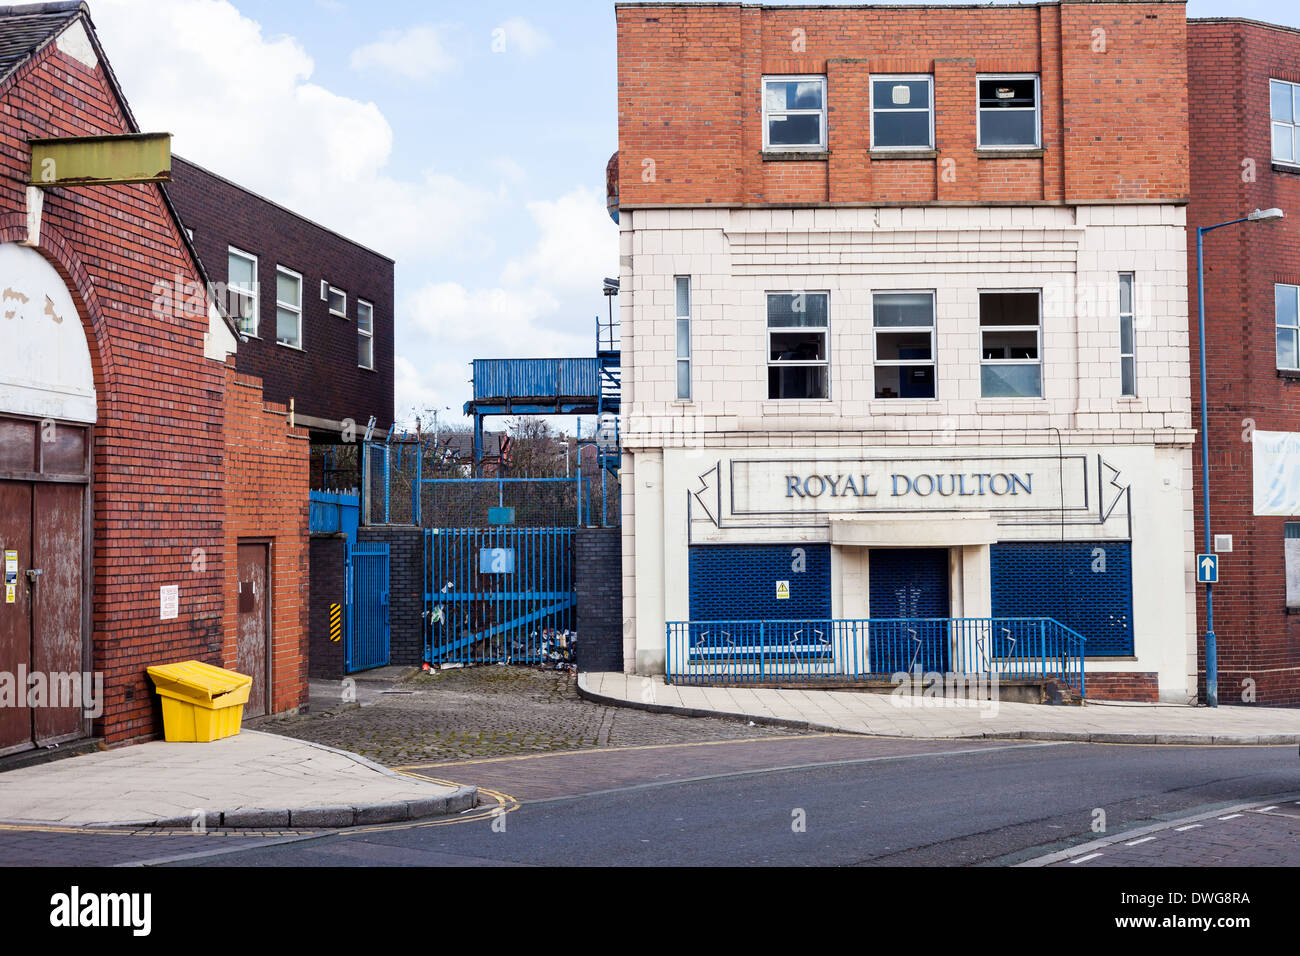 Royal Doulton magasin d'usine de style art déco. L'ancienne usine Royal Doulton est en cours de démolition. Rue du Nil Burslem Stoke Banque D'Images